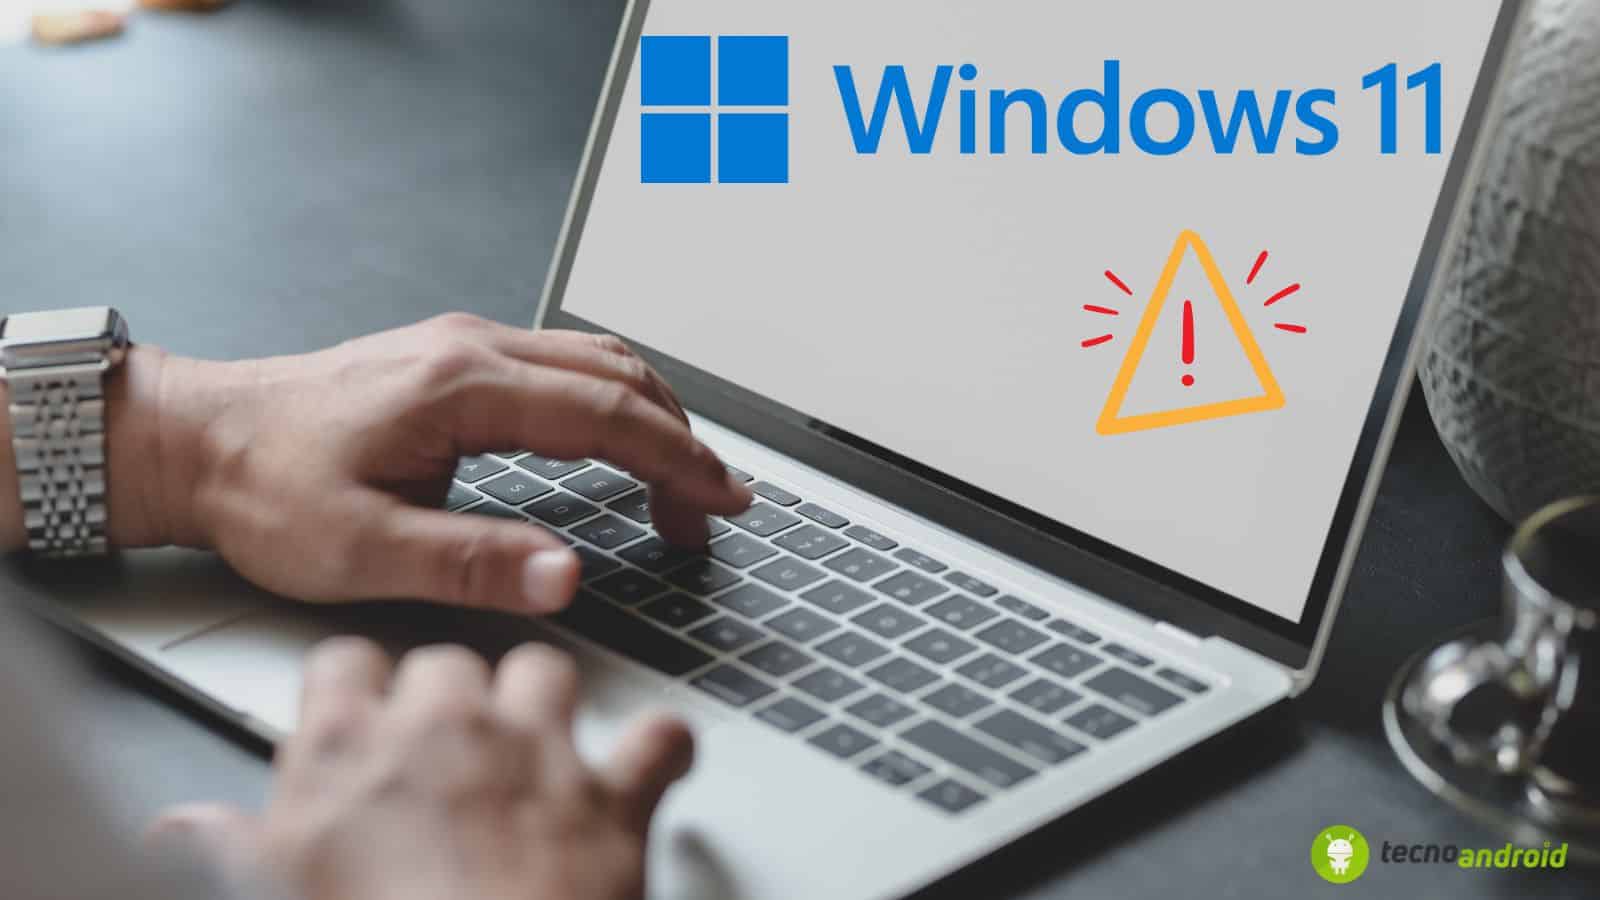 Windows 11: attenzione all'aggiornamento che rompe i computer